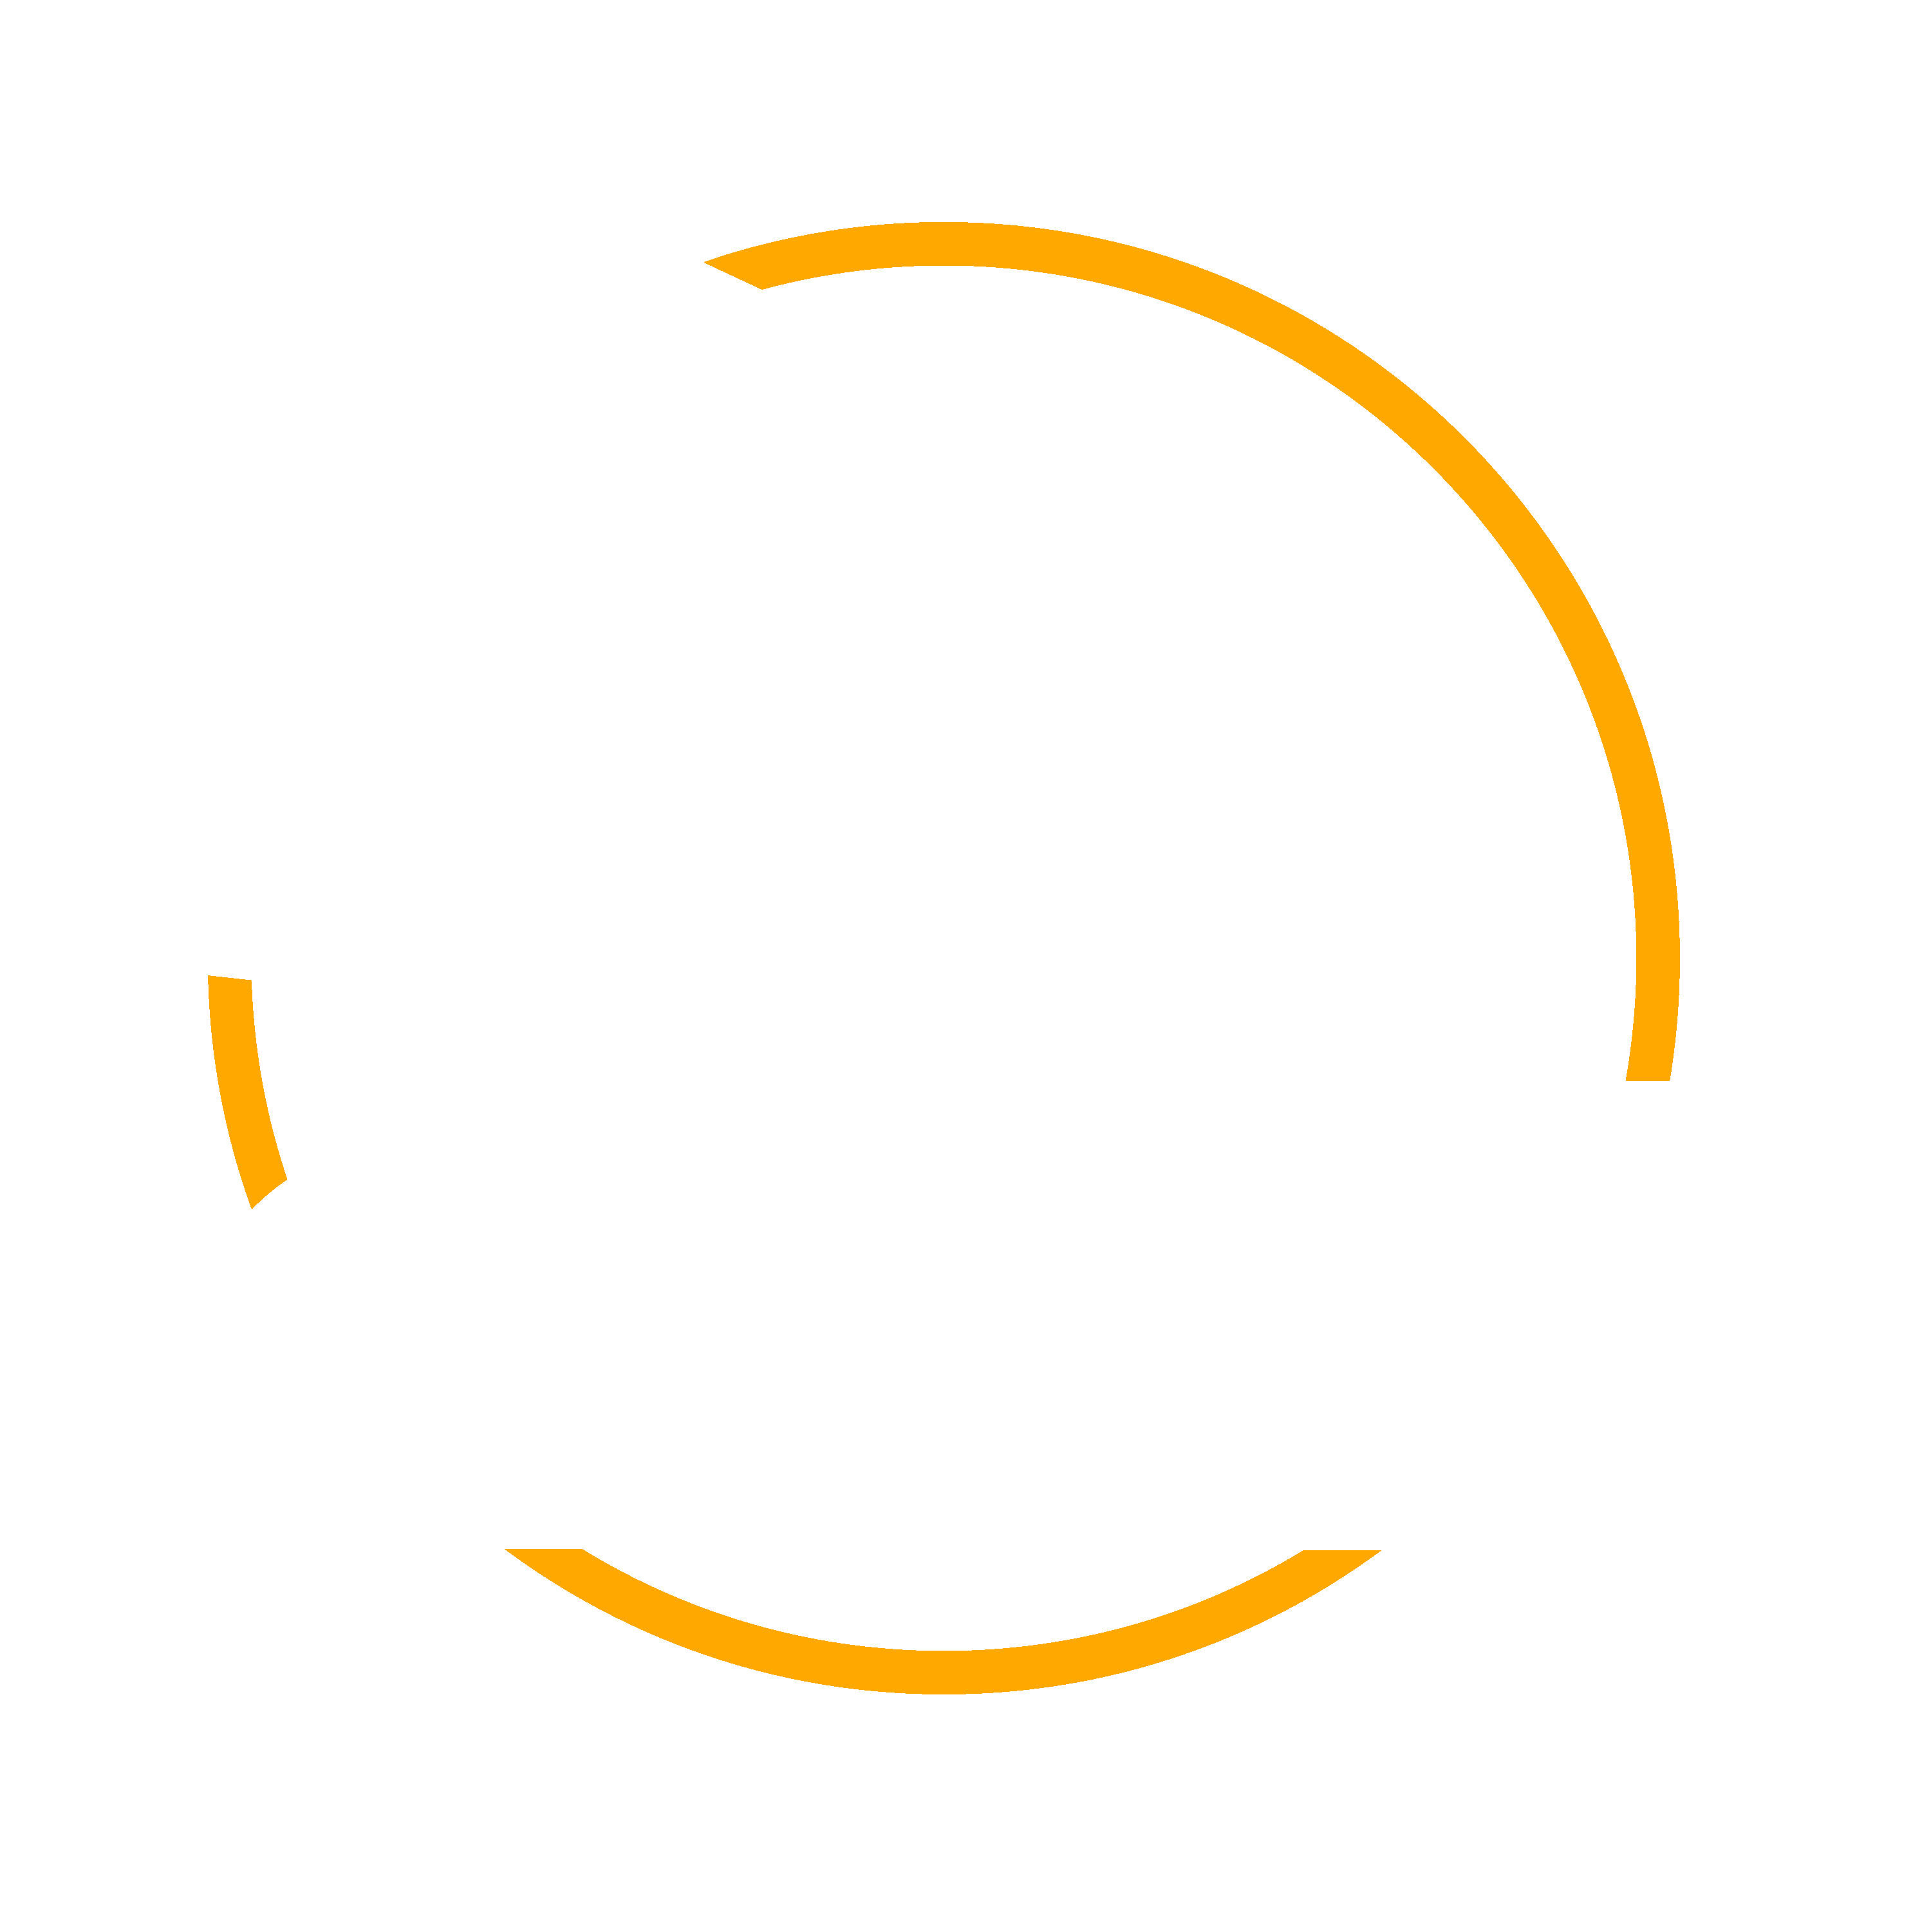 La Boutique Club Emploi